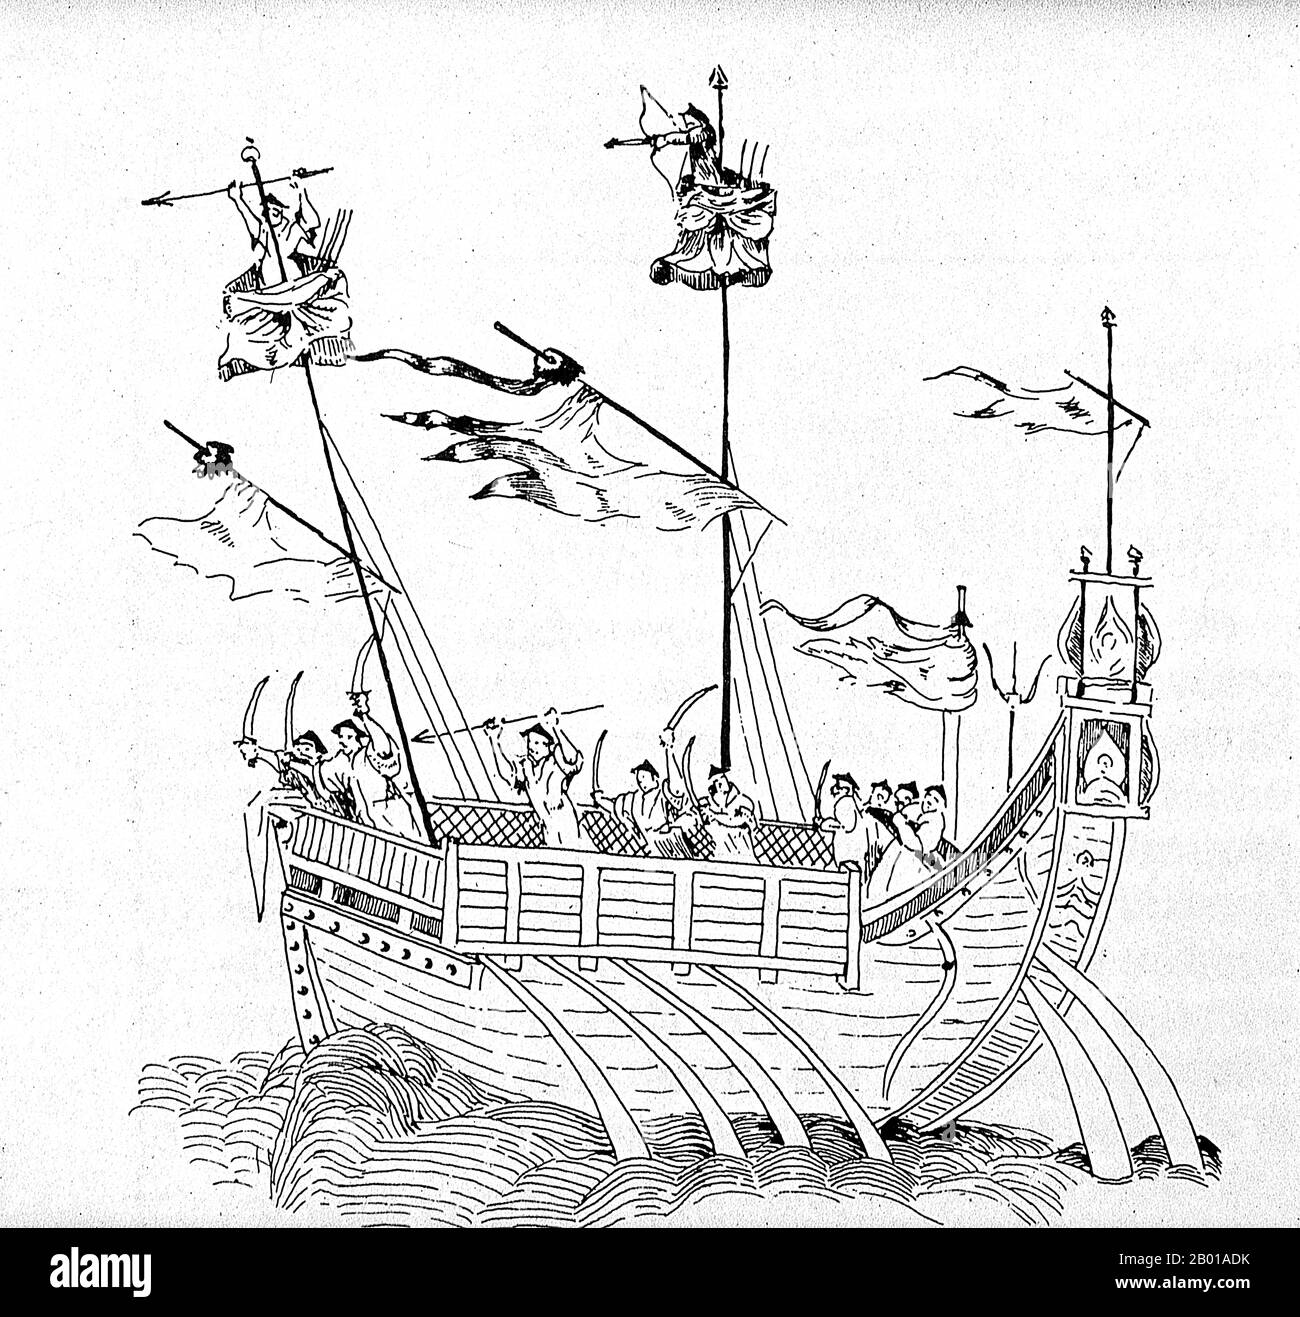 China: Ein zweimastiger Kriegsschrott der Ming-Dynastie, ca. Anfang des 17.. Jahrhunderts. Ein Schrott ist ein altes chinesisches Segelschiff Design noch heute in Gebrauch. Dschunks wurden während der Han-Dynastie (206 v. Chr. – 220 n. Chr.) entwickelt und wurden bereits im 2.. Jahrhundert n. Chr. als Seeschiffe eingesetzt. Sie entwickelten sich in den späteren Dynastien und wurden in ganz Asien für ausgedehnte Ozeanreisen genutzt. Sie wurden in geringerer Zahl in ganz Südostasien und Indien gefunden, vor allem aber in China, vielleicht am bekanntesten in Hongkong. Stockfoto